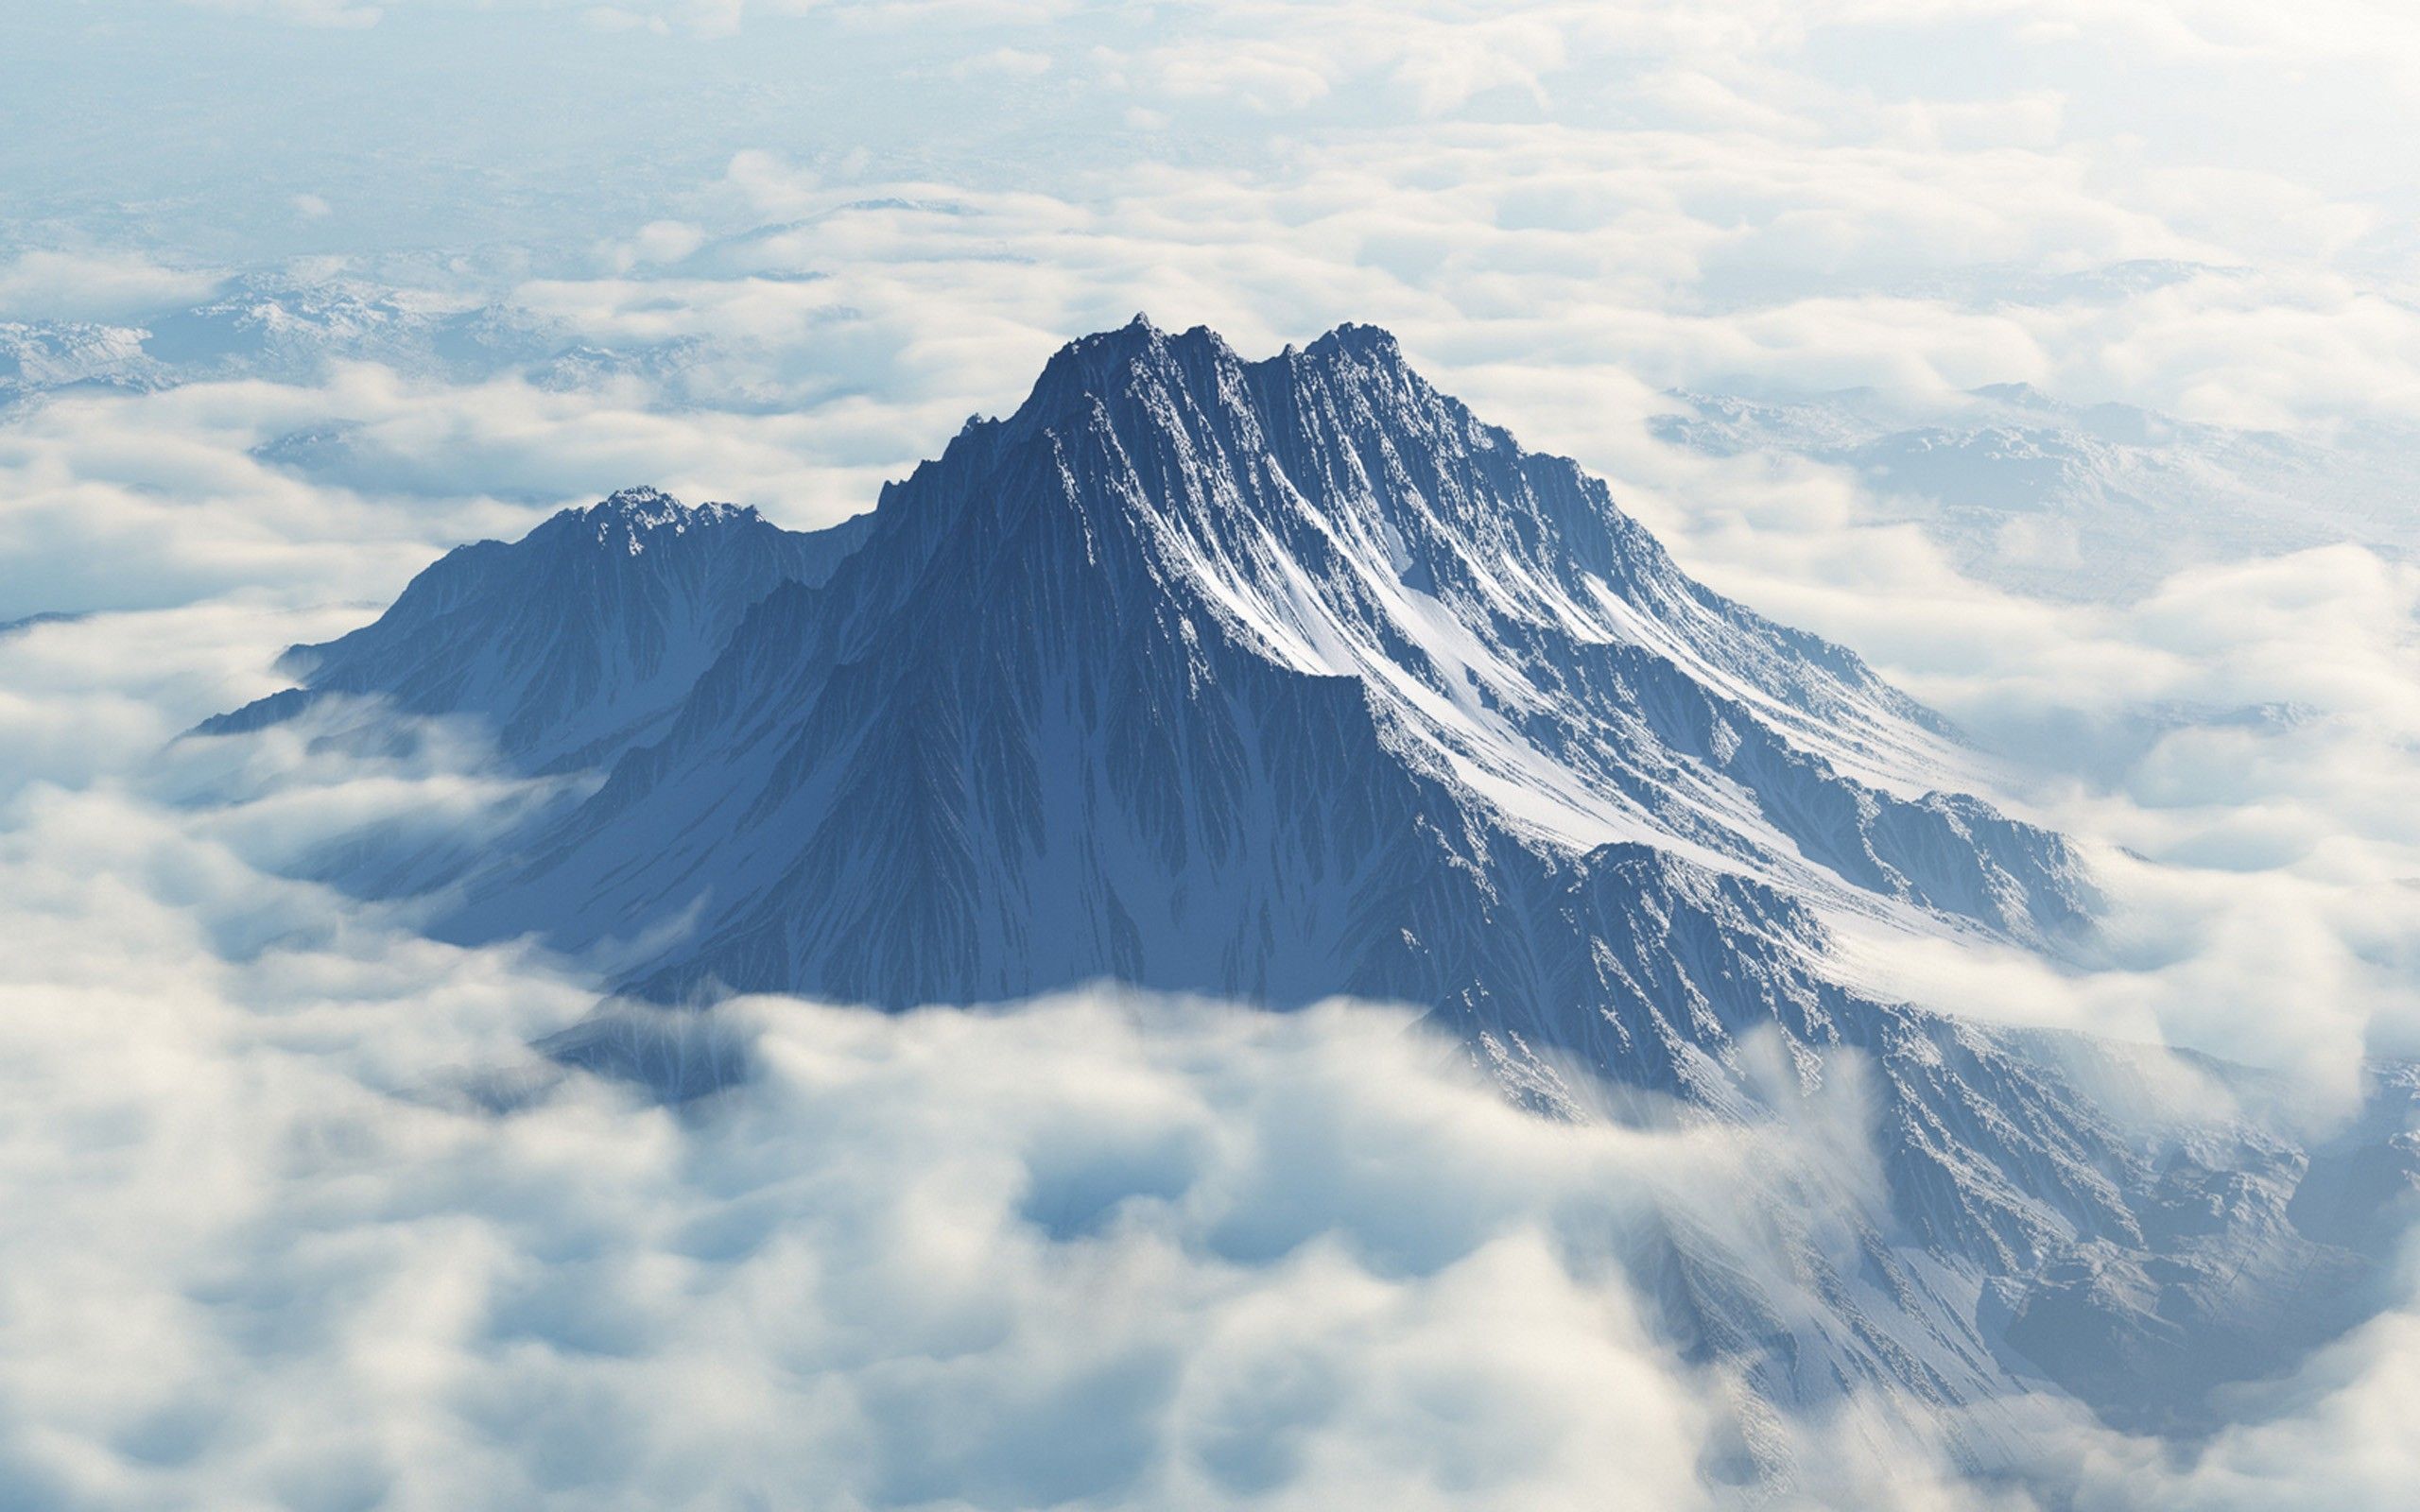 Mount Olympus Aerial View wallpaper. Mount Olympus Aerial View